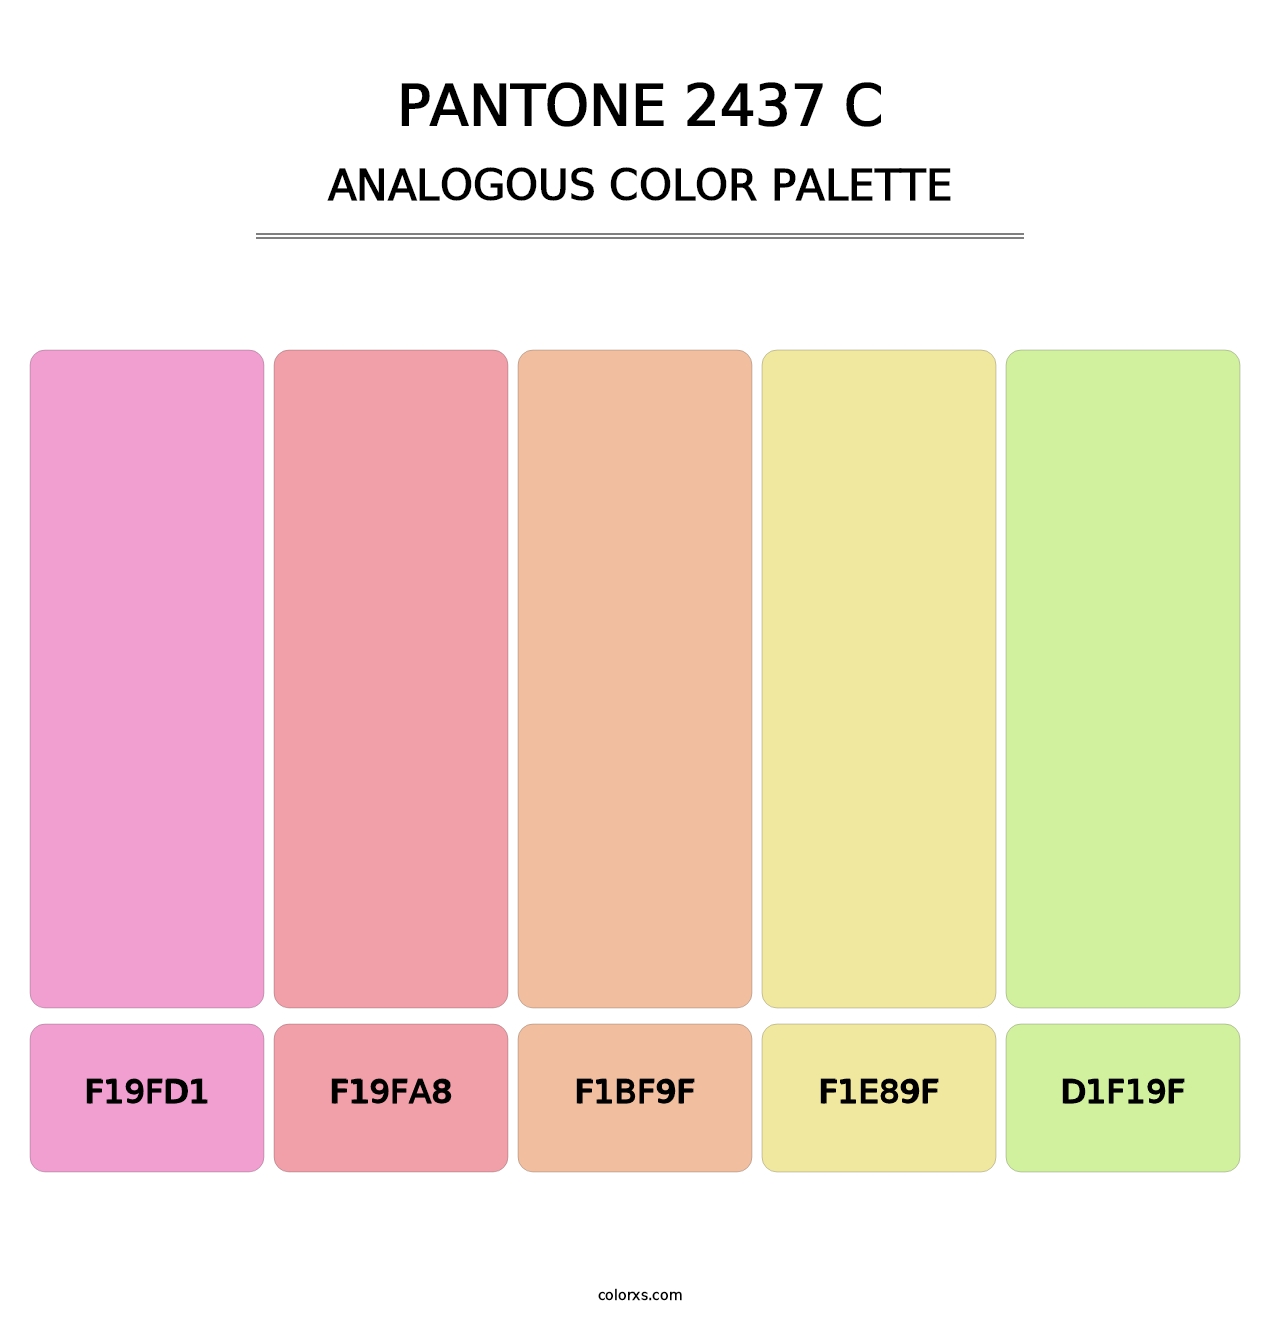 PANTONE 2437 C - Analogous Color Palette